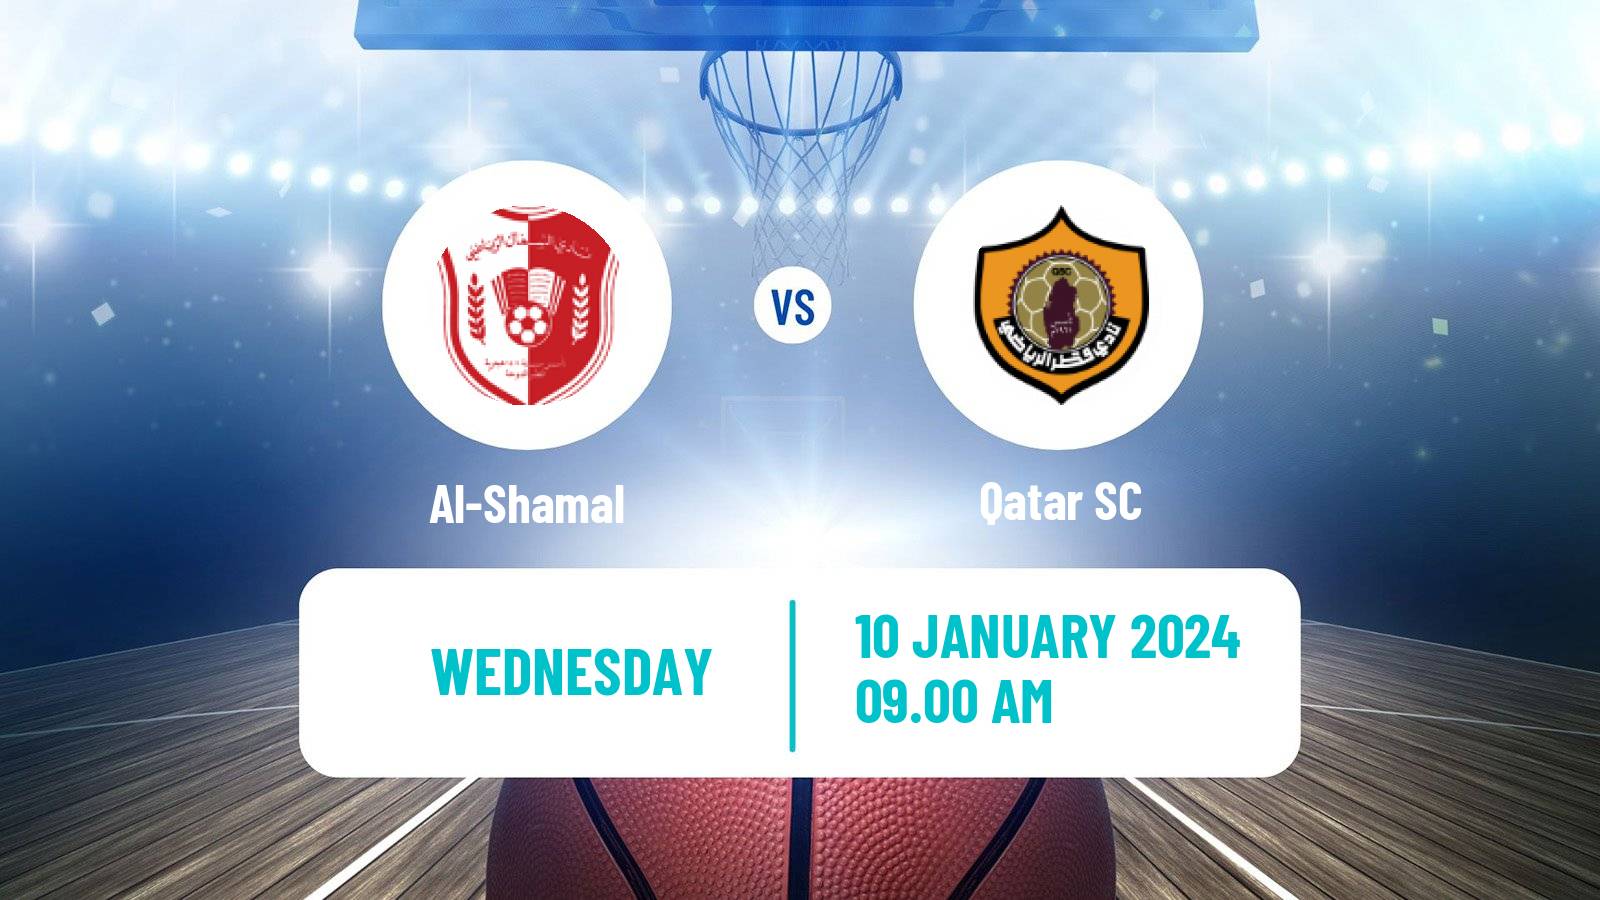 Basketball Qatar Basketball League Al-Shamal - Qatar SC